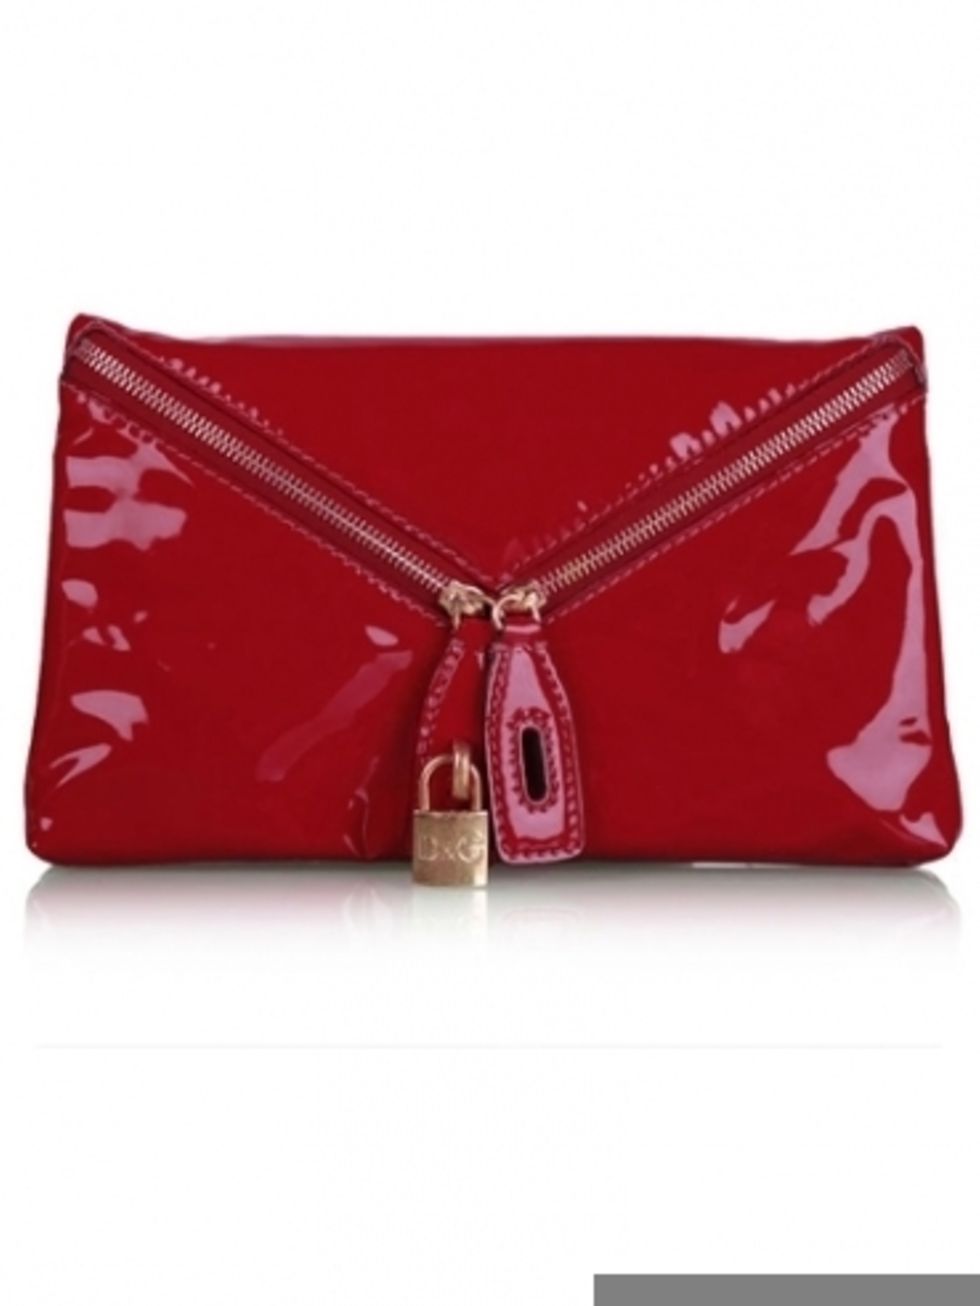 Textile, Red, Bag, Wallet, Maroon, Shoulder bag, Leather, Liver, Zipper, Coin purse, 